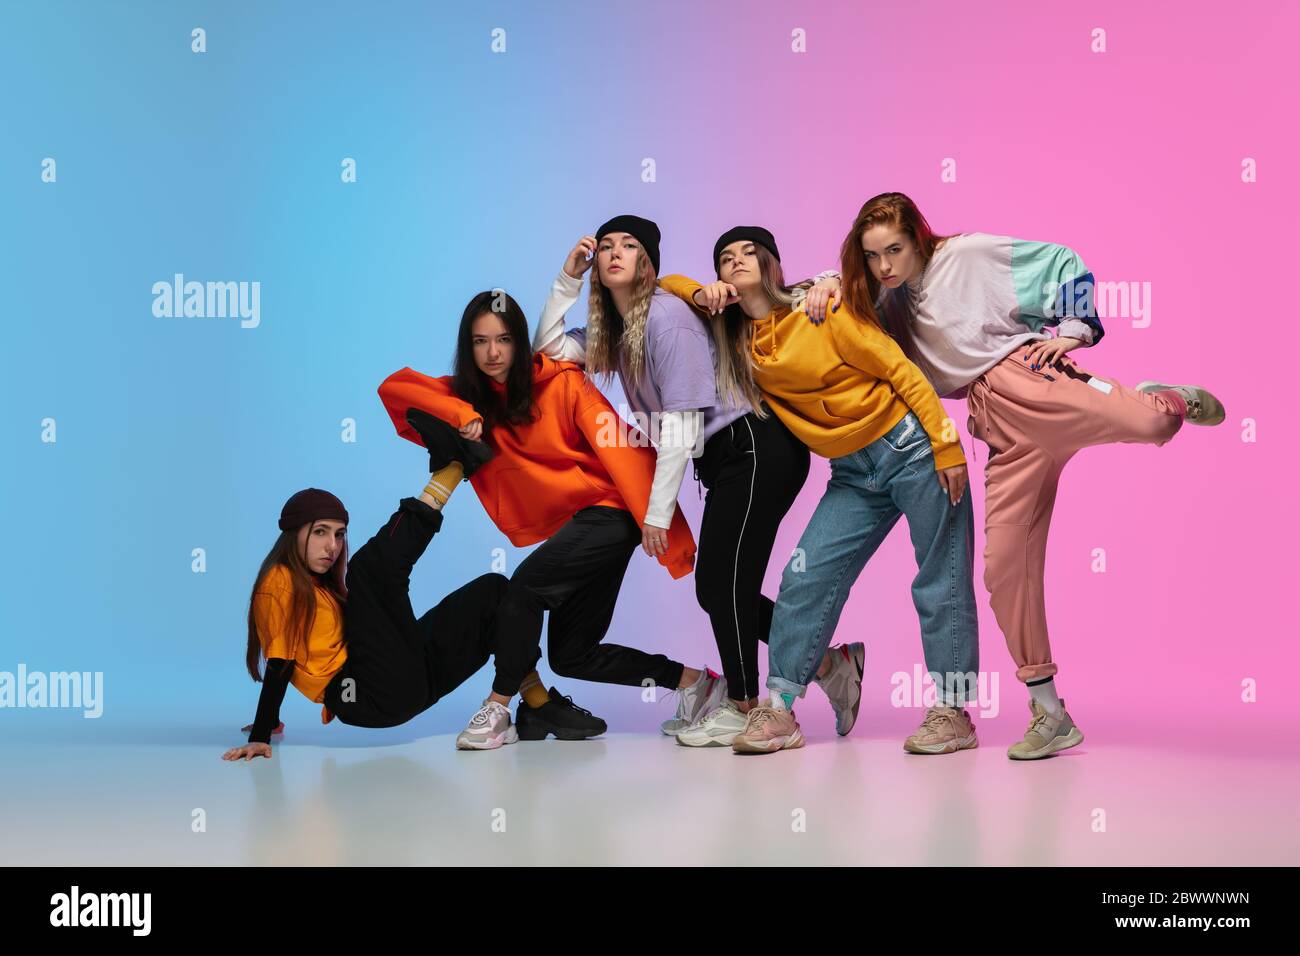 Grupo de bailarines, y niñas bailando hip-hop con ropa elegante sobre fondo de gradiente colorido en la sala de baile de neón. Cultura juvenil, movimiento, estilo y moda, acción. Retrato de